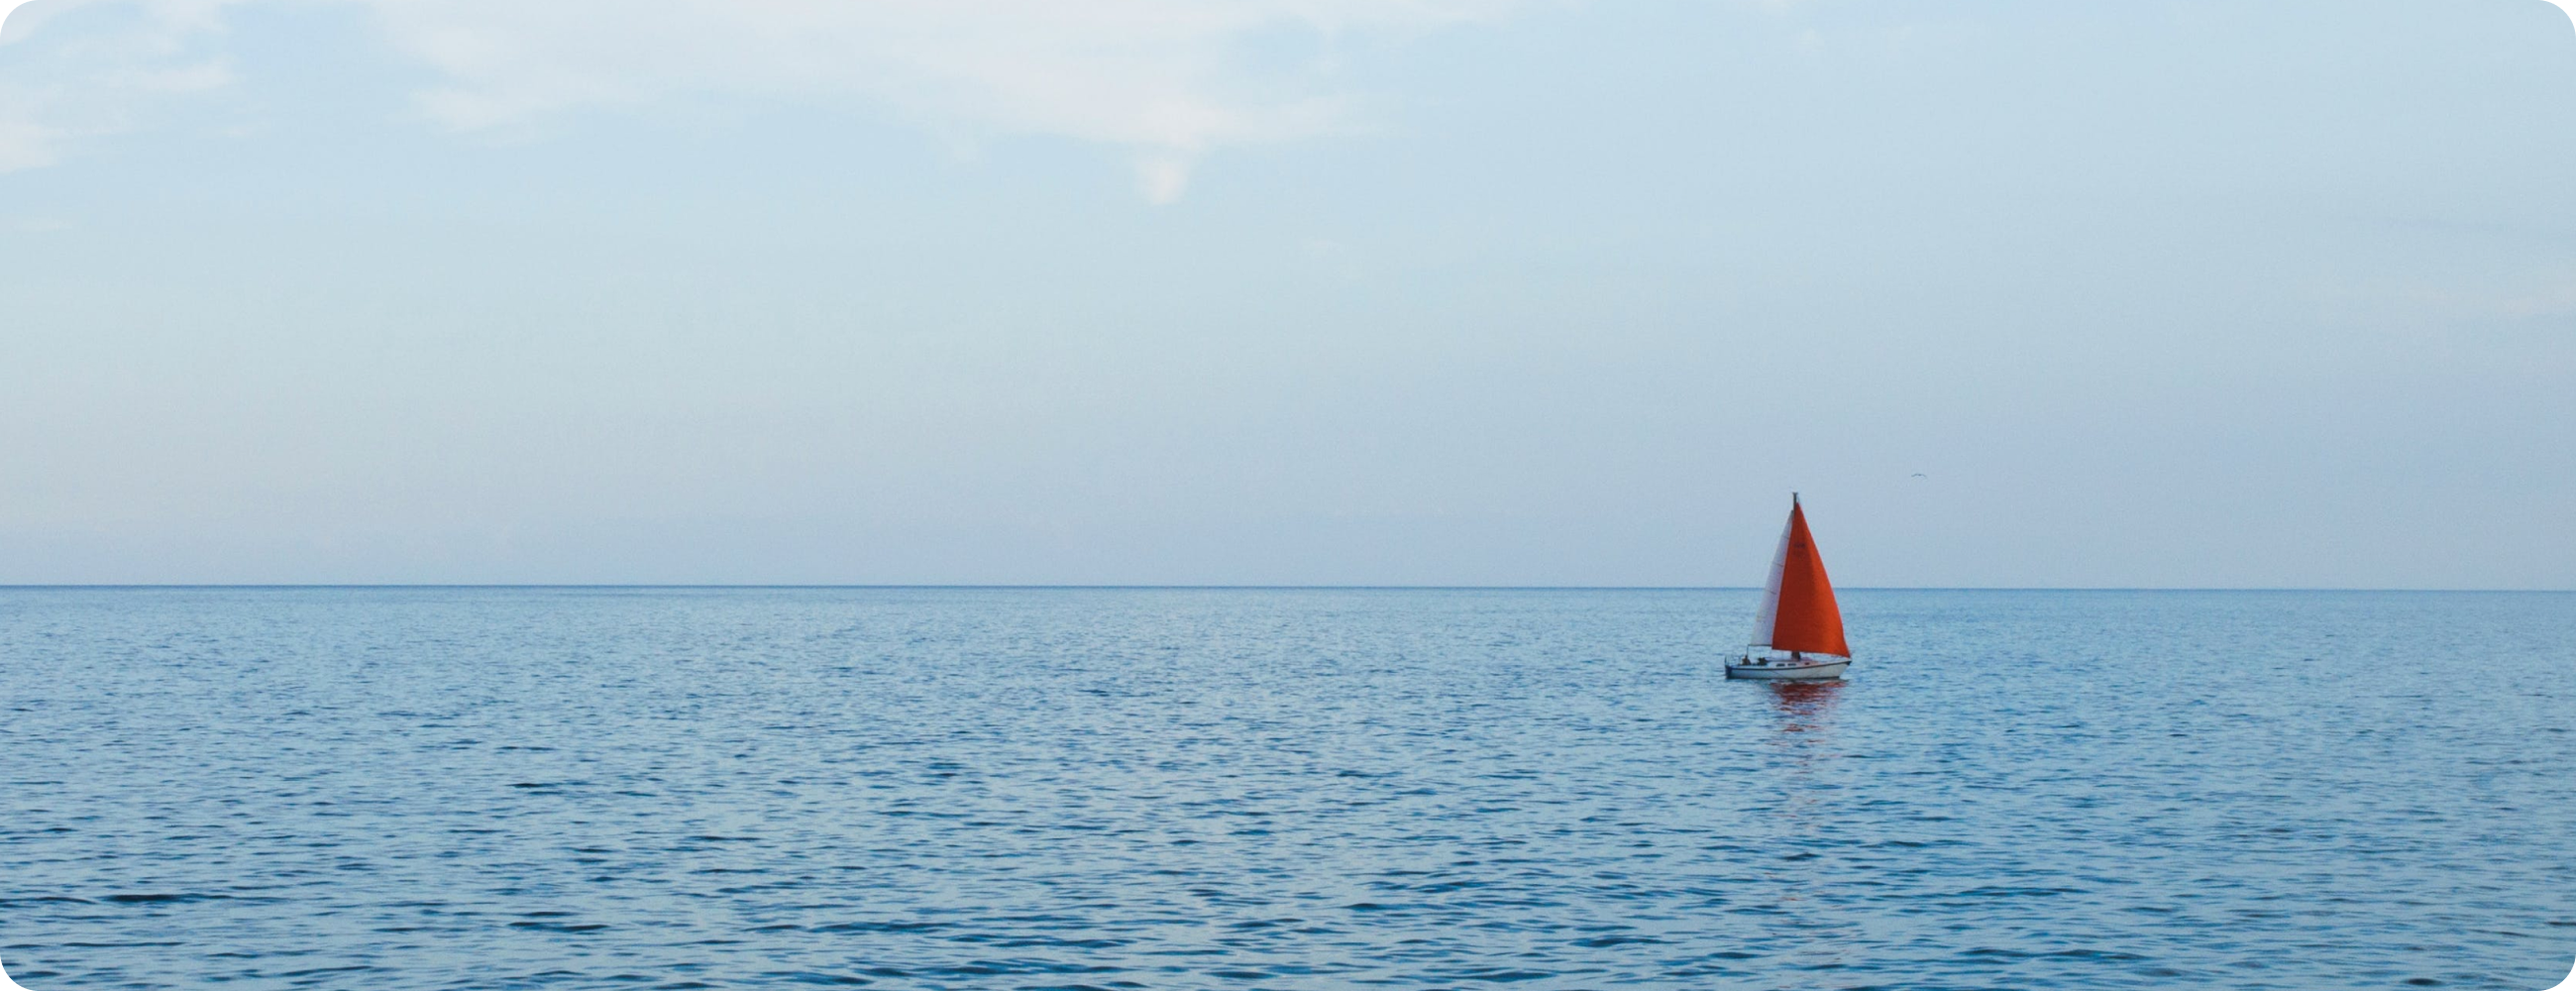 静かな海に浮かぶ、赤い帆を持つヨットが一隻、遠くに見える